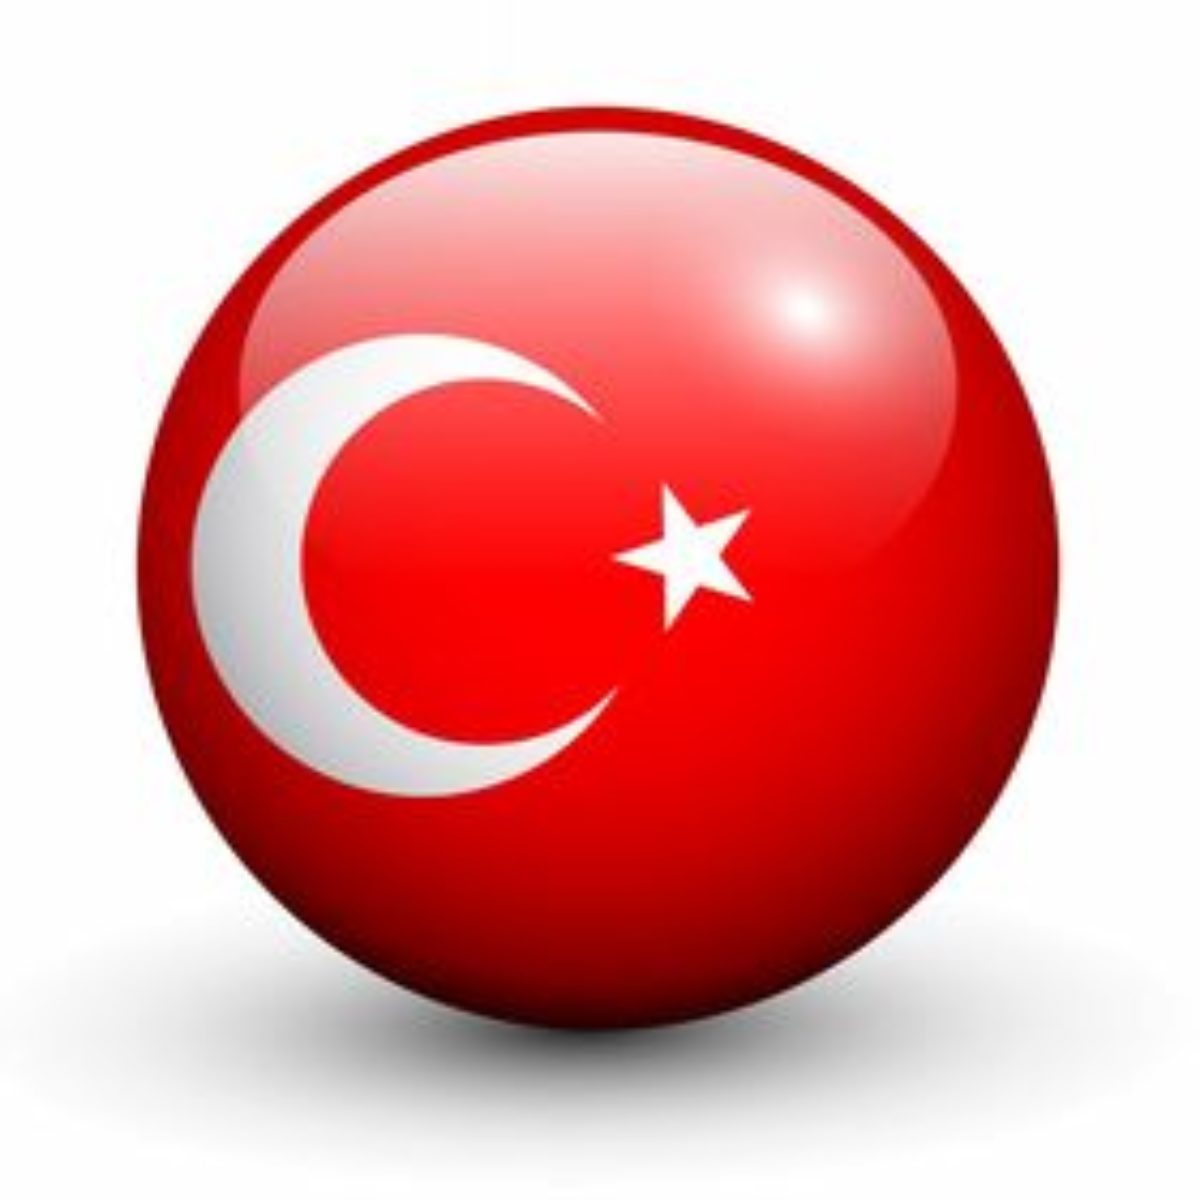 NM ADVOKATI TURSKA. ADVOKATSKO ZASTUPANJE U TURSKOJ